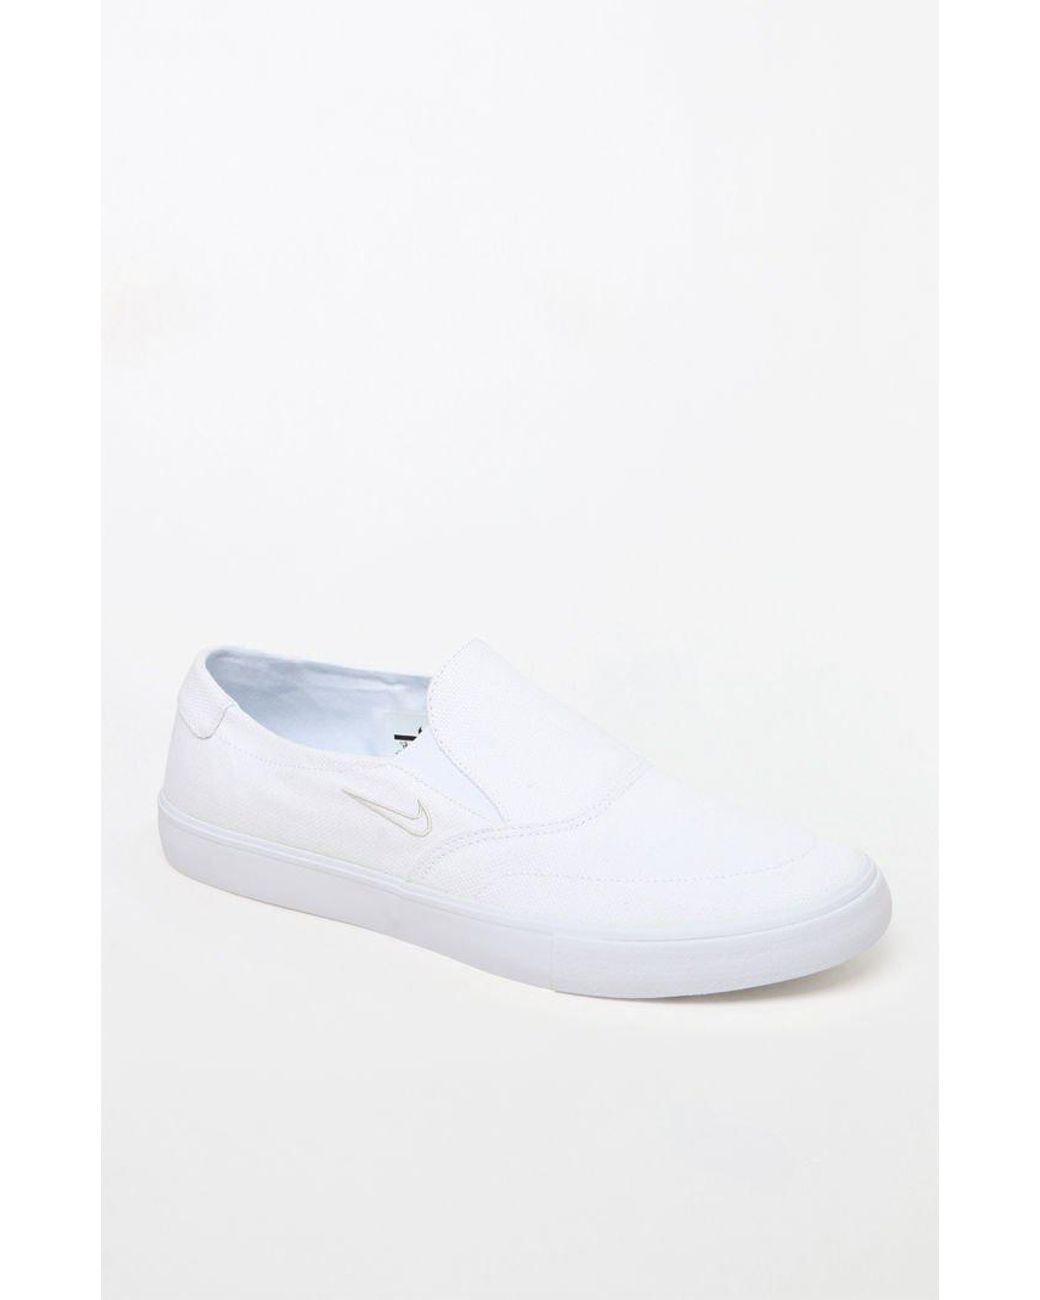 Nike Rubber Zoom Stefan Janoski Slip-on White Shoes for Men | Lyst